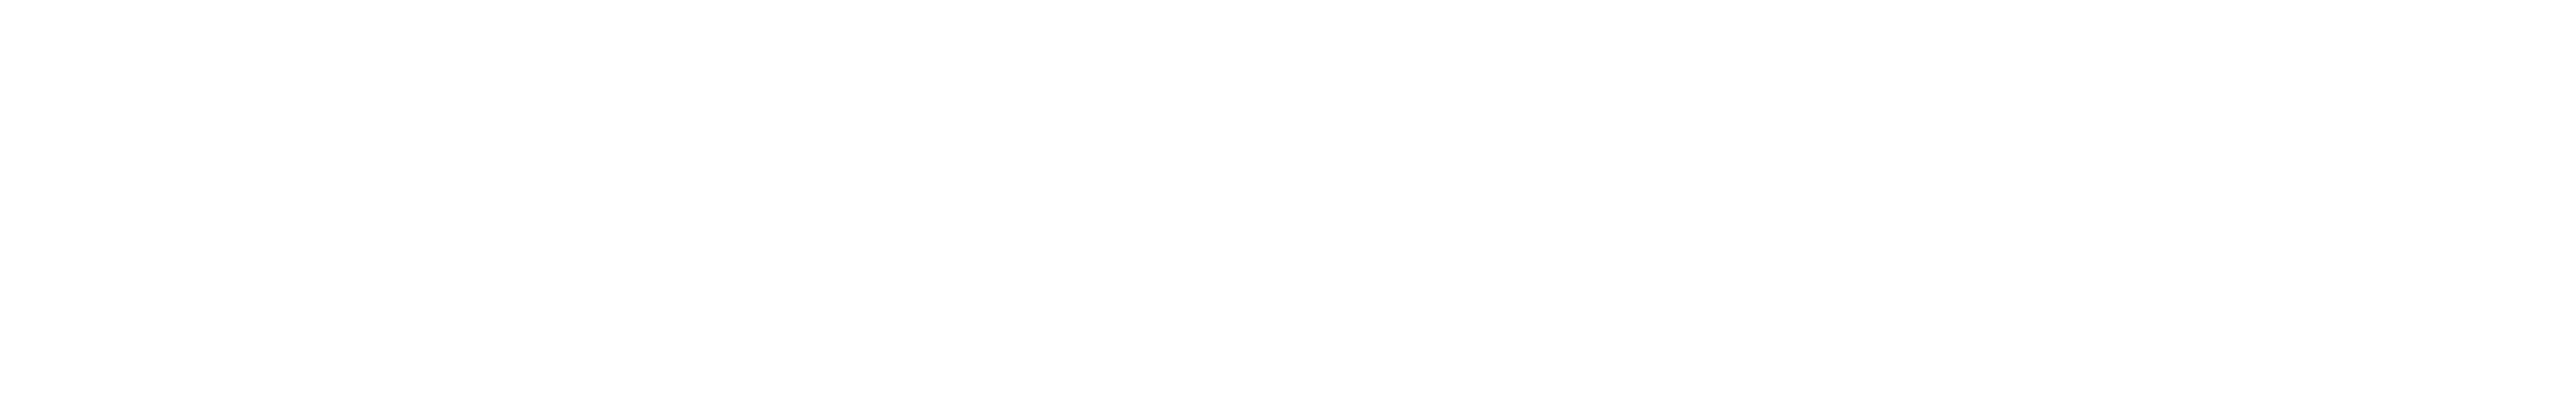 Logo von ViewSonic in Weiss